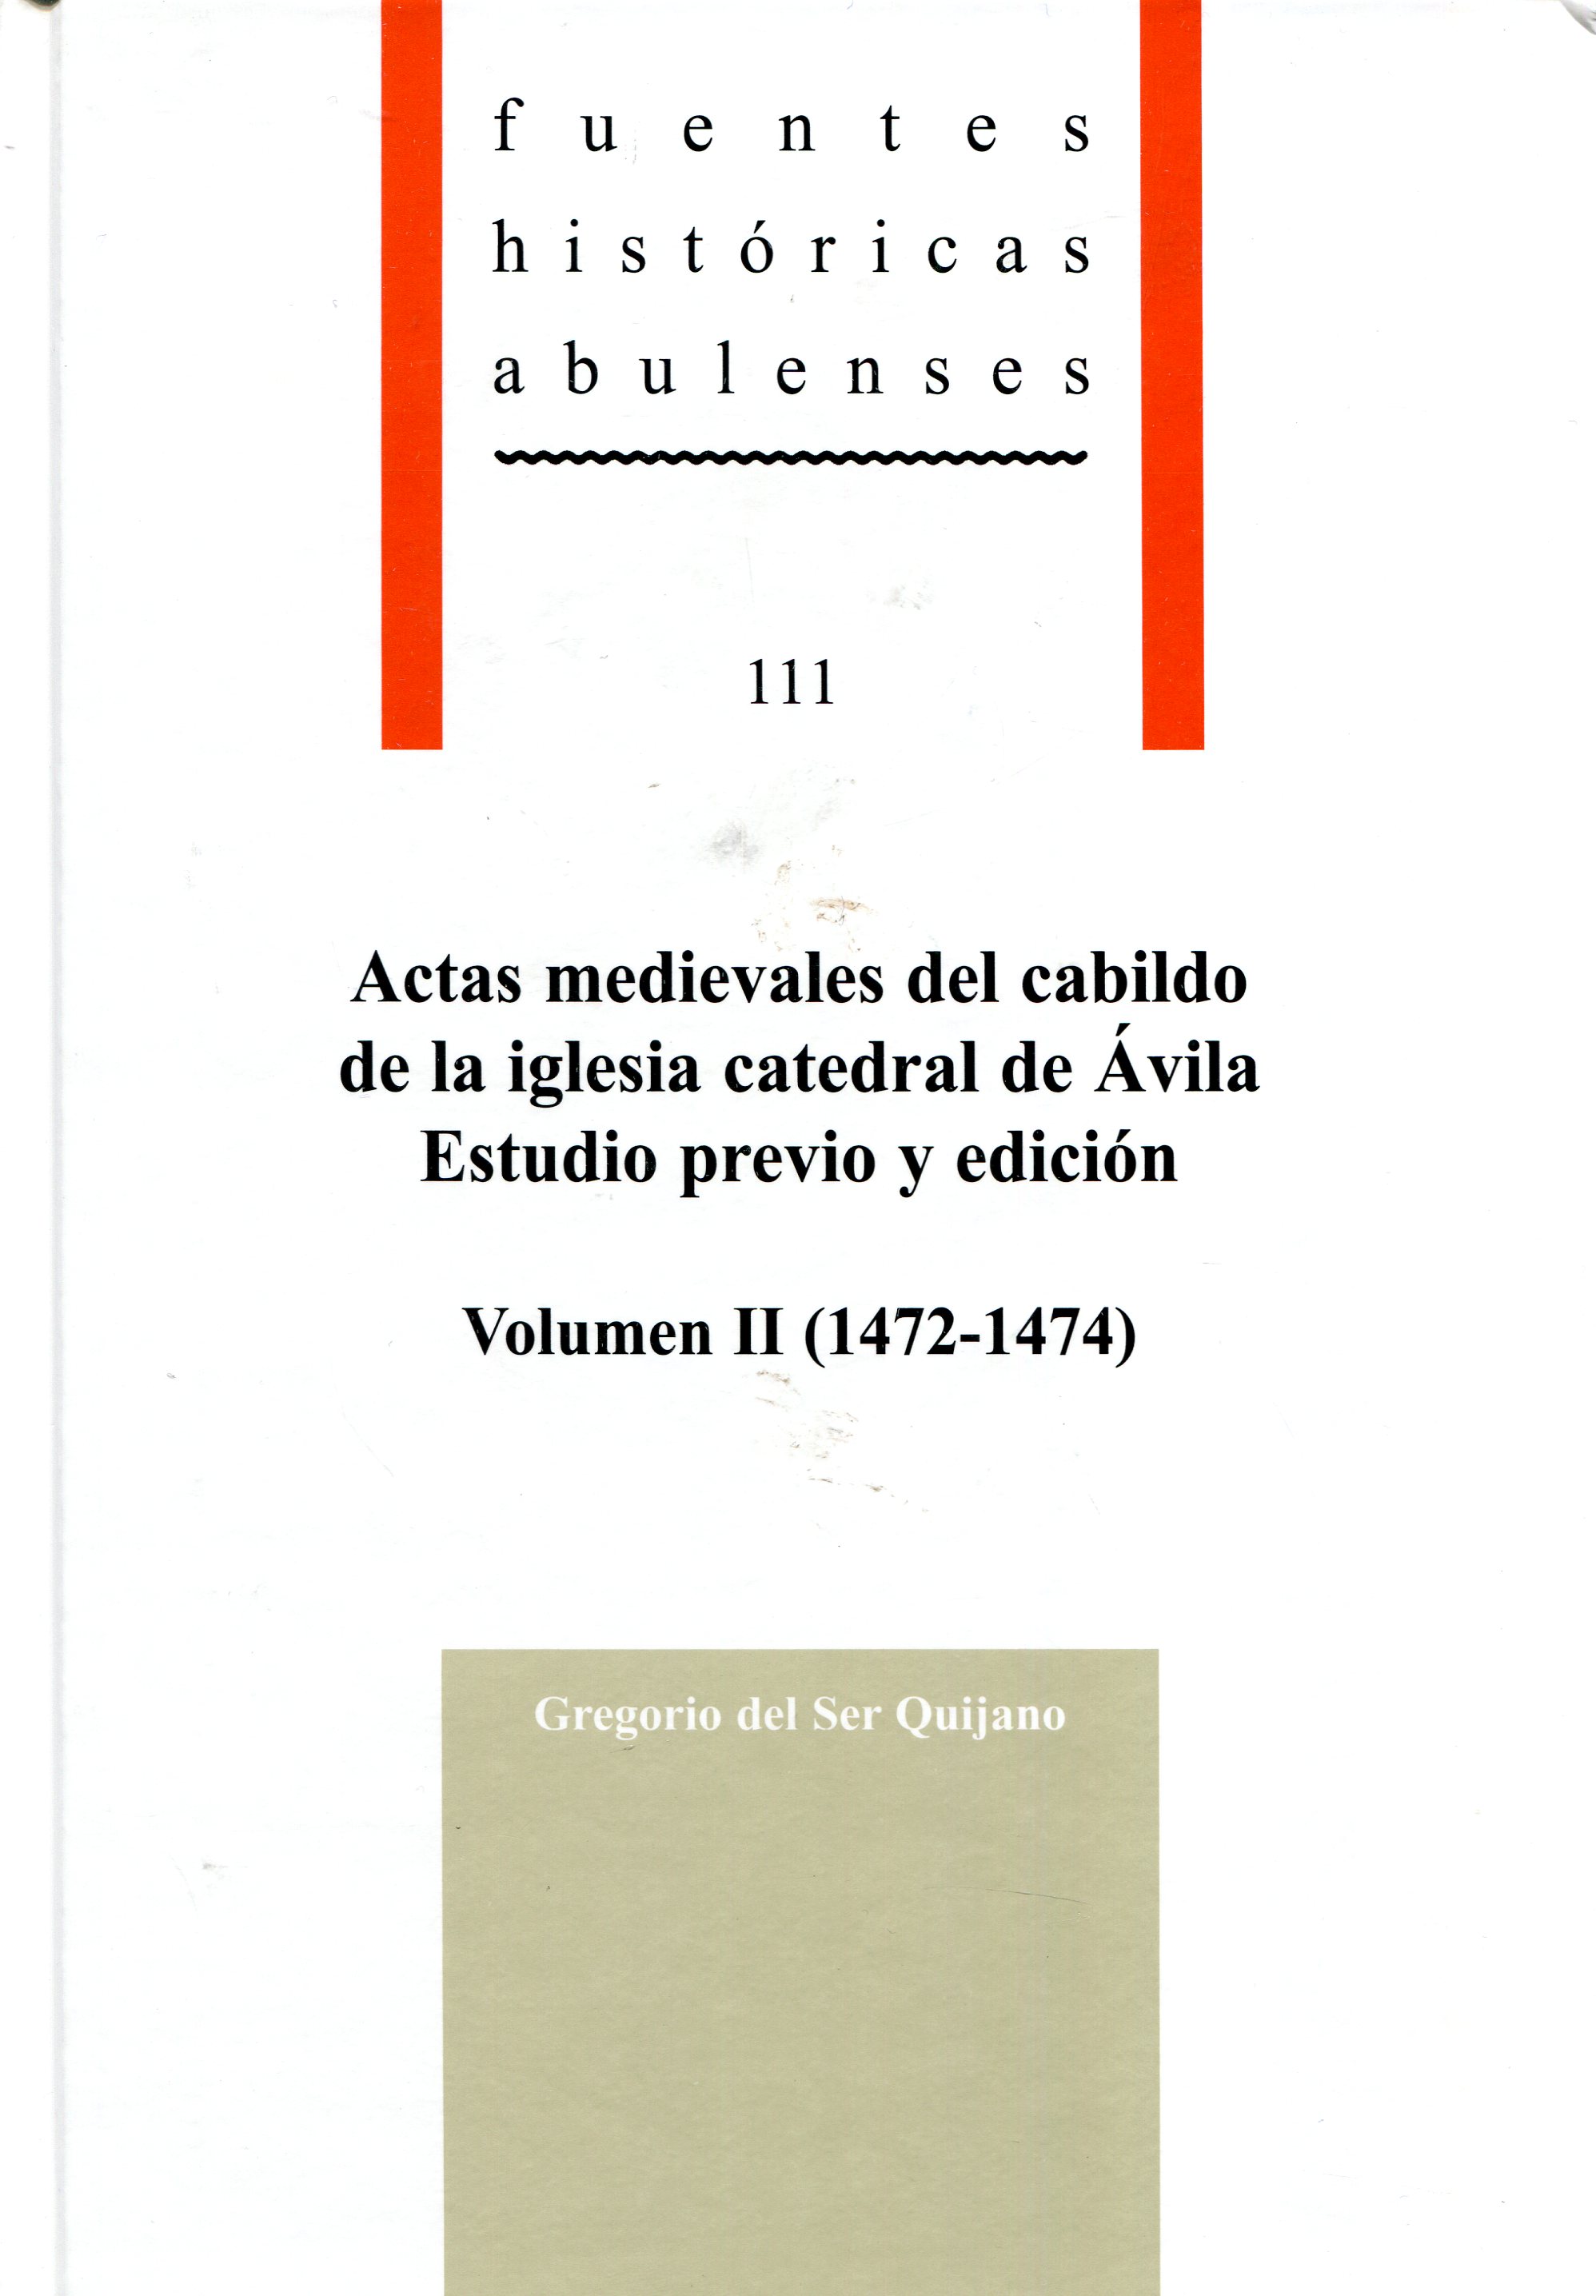 Actas medievales del cabildo de la iglesia catedral de Ávila: estudio previo y edición